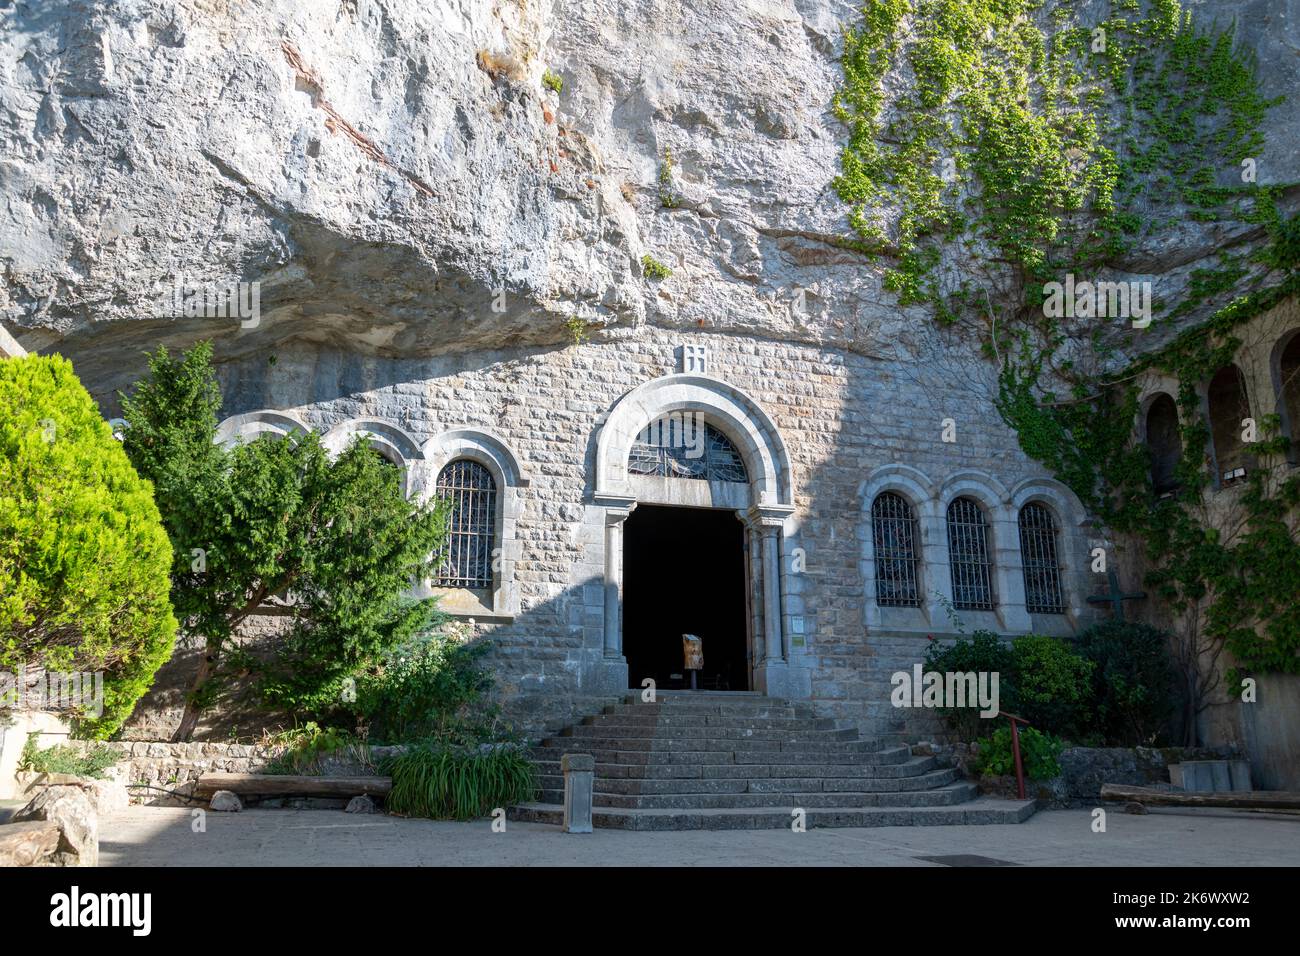 Grotte de Mary Magdalene, Var, France. L'entrée de l'église et de la grotte elle-même. Banque D'Images